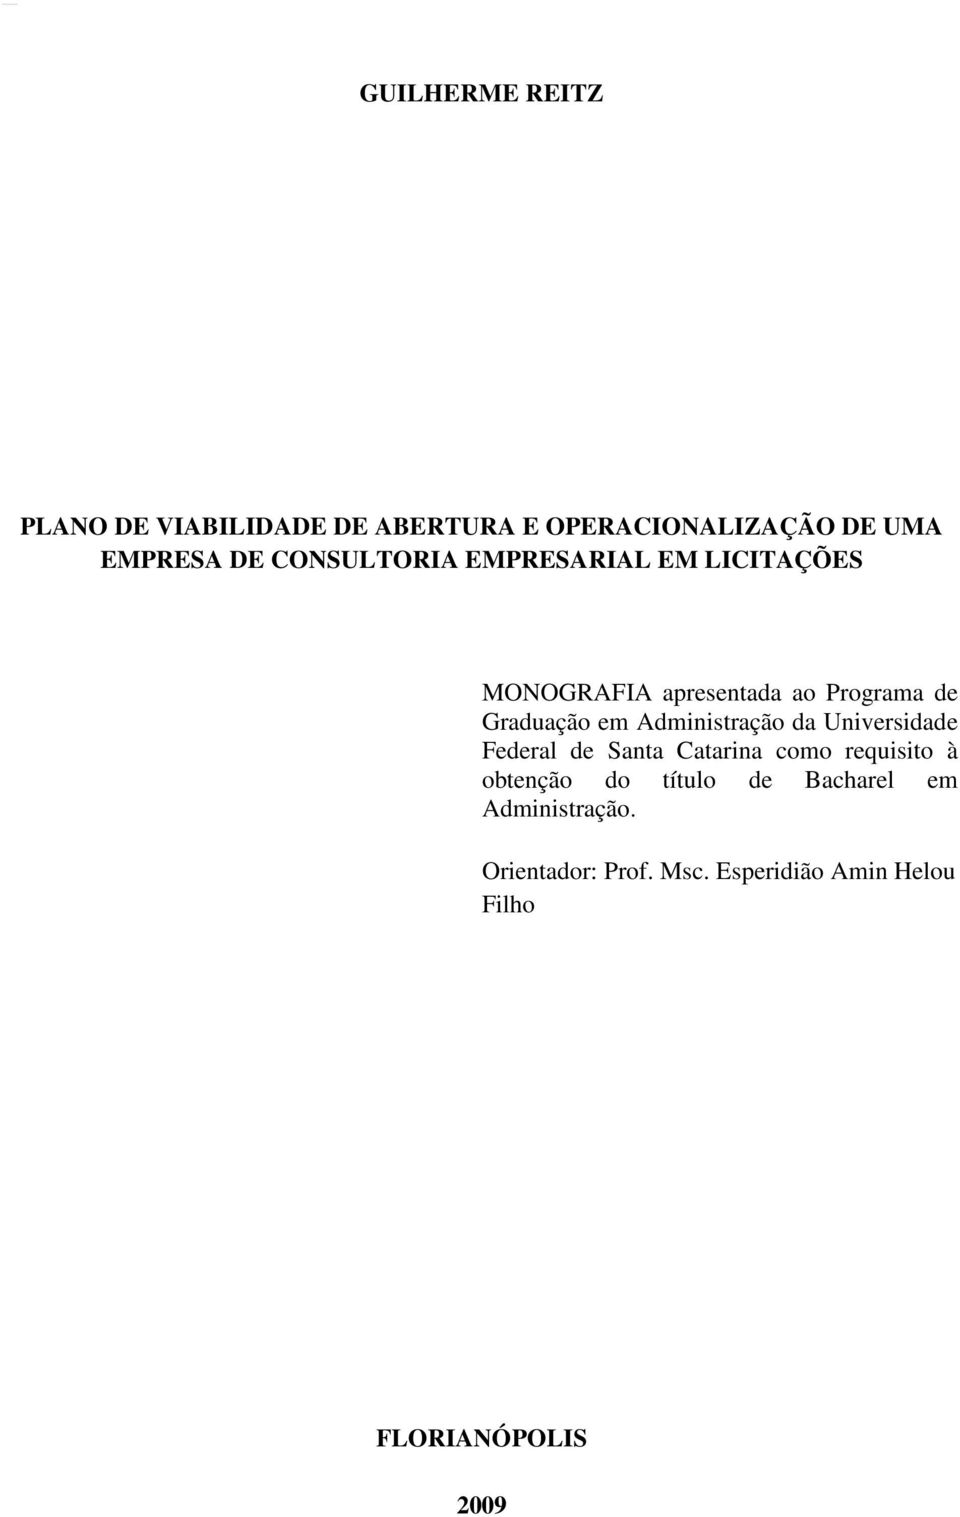 Graduação em Administração da Universidade Federal de Santa Catarina como requisito à obtenção